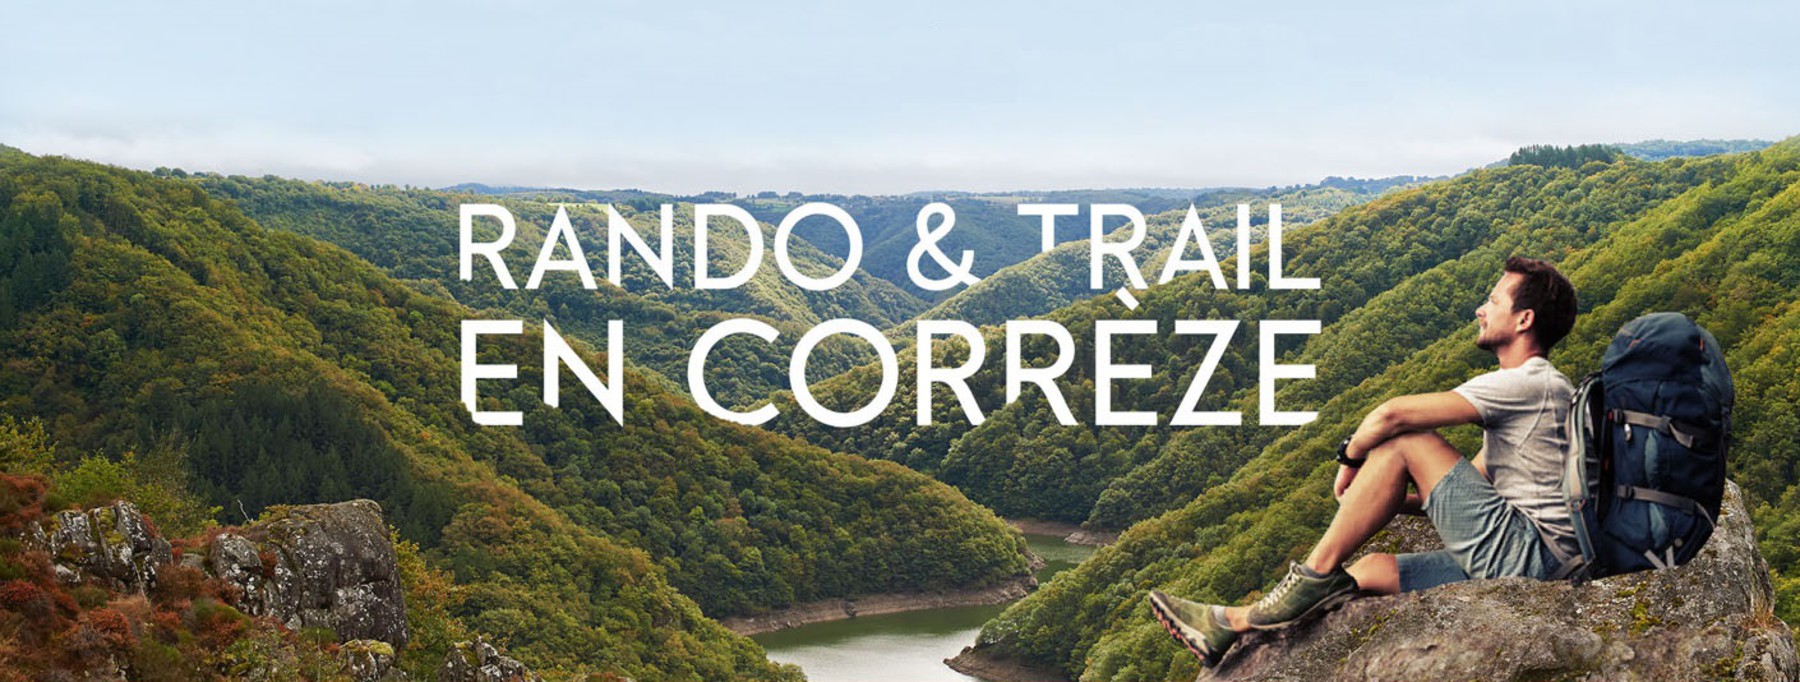 Rando & trail en Corrèze